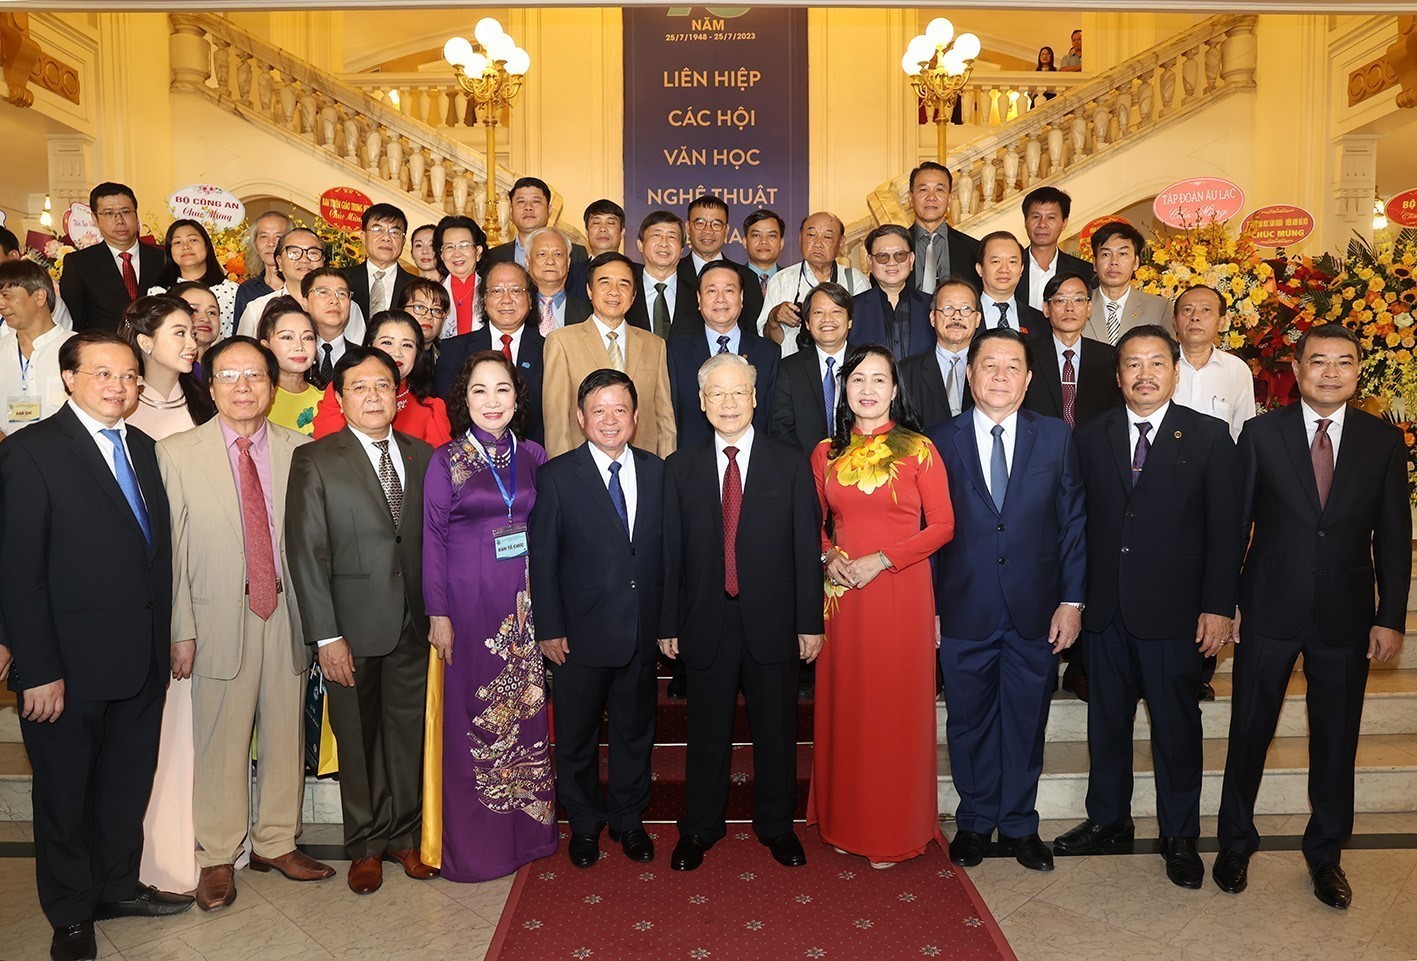 Liên hiệp các Hội Văn học nghệ thuật Việt Nam và việc chấn hưng sự nghiệp văn hoá, văn nghệ của đất nước trong thời gian tới - 1